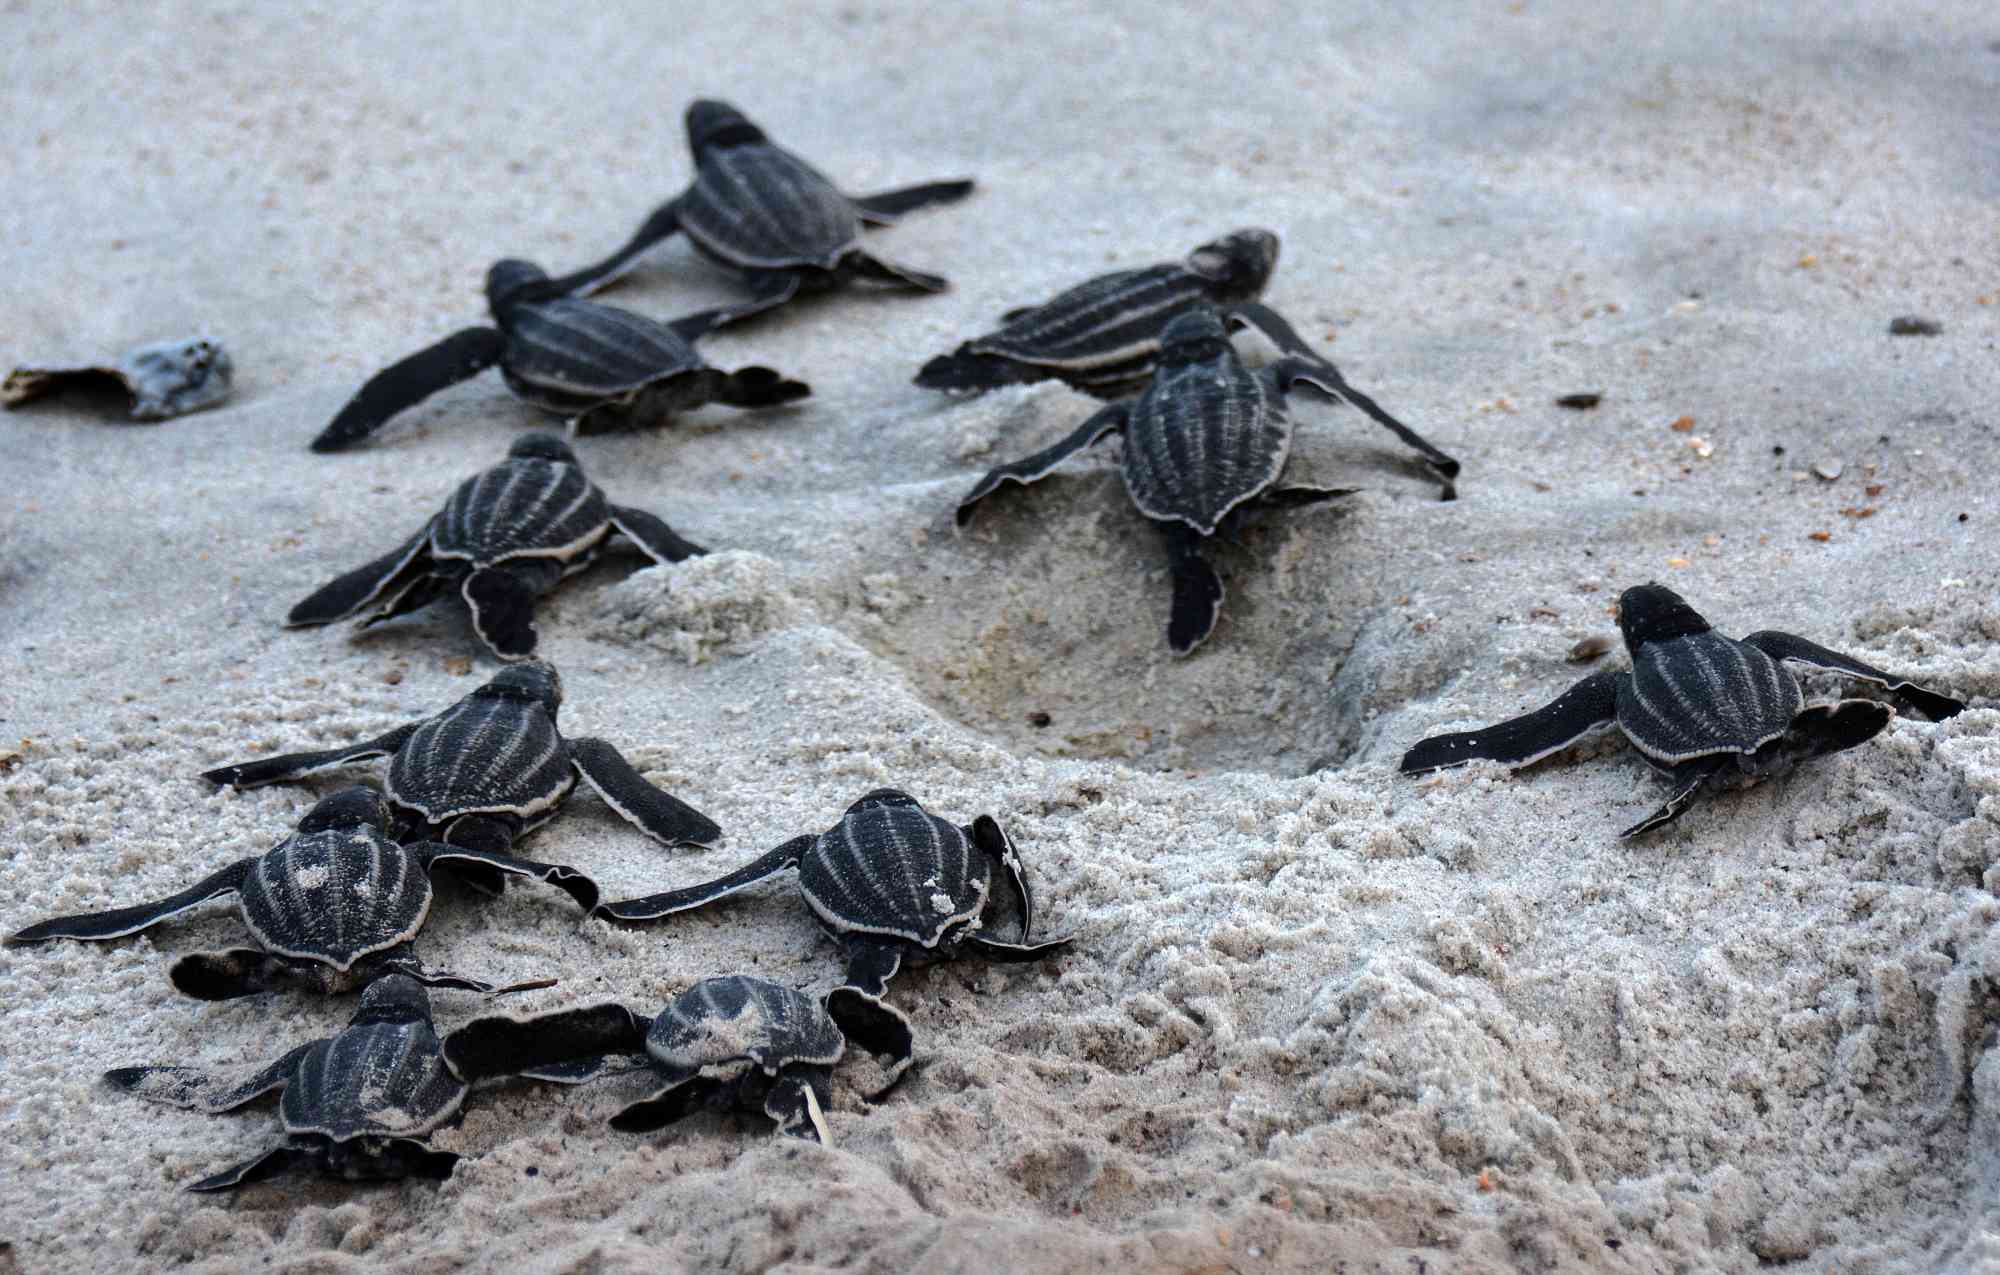 Leatherback sea turtle hatchlings, Amelia Island, Florida